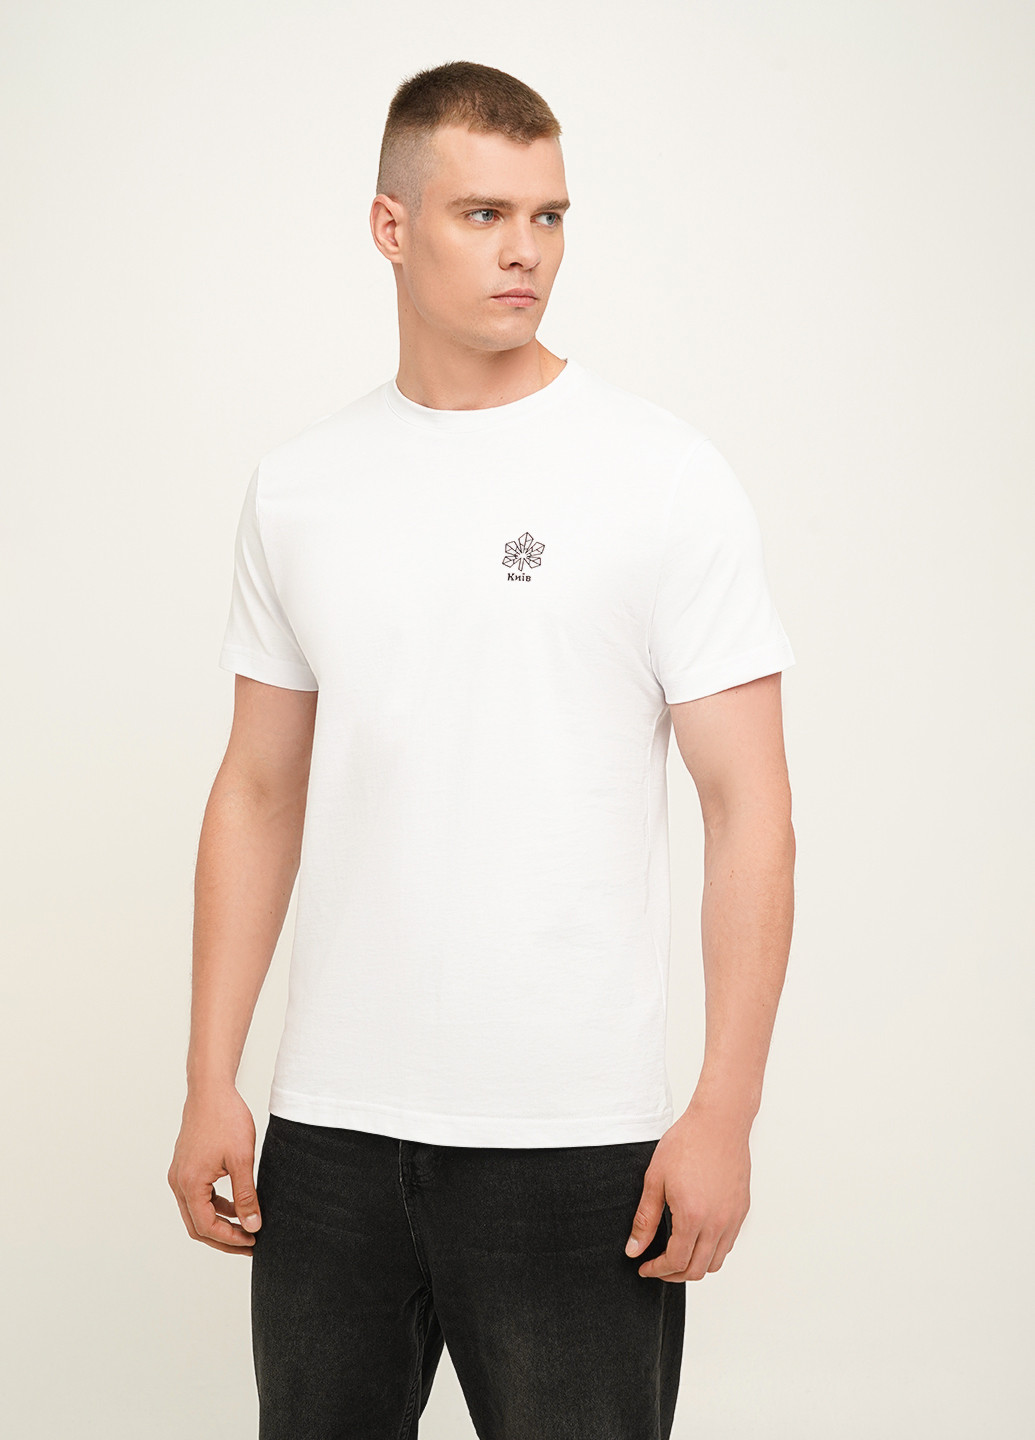 Біла чоловіча футболка з принтом "київ" KASTA design